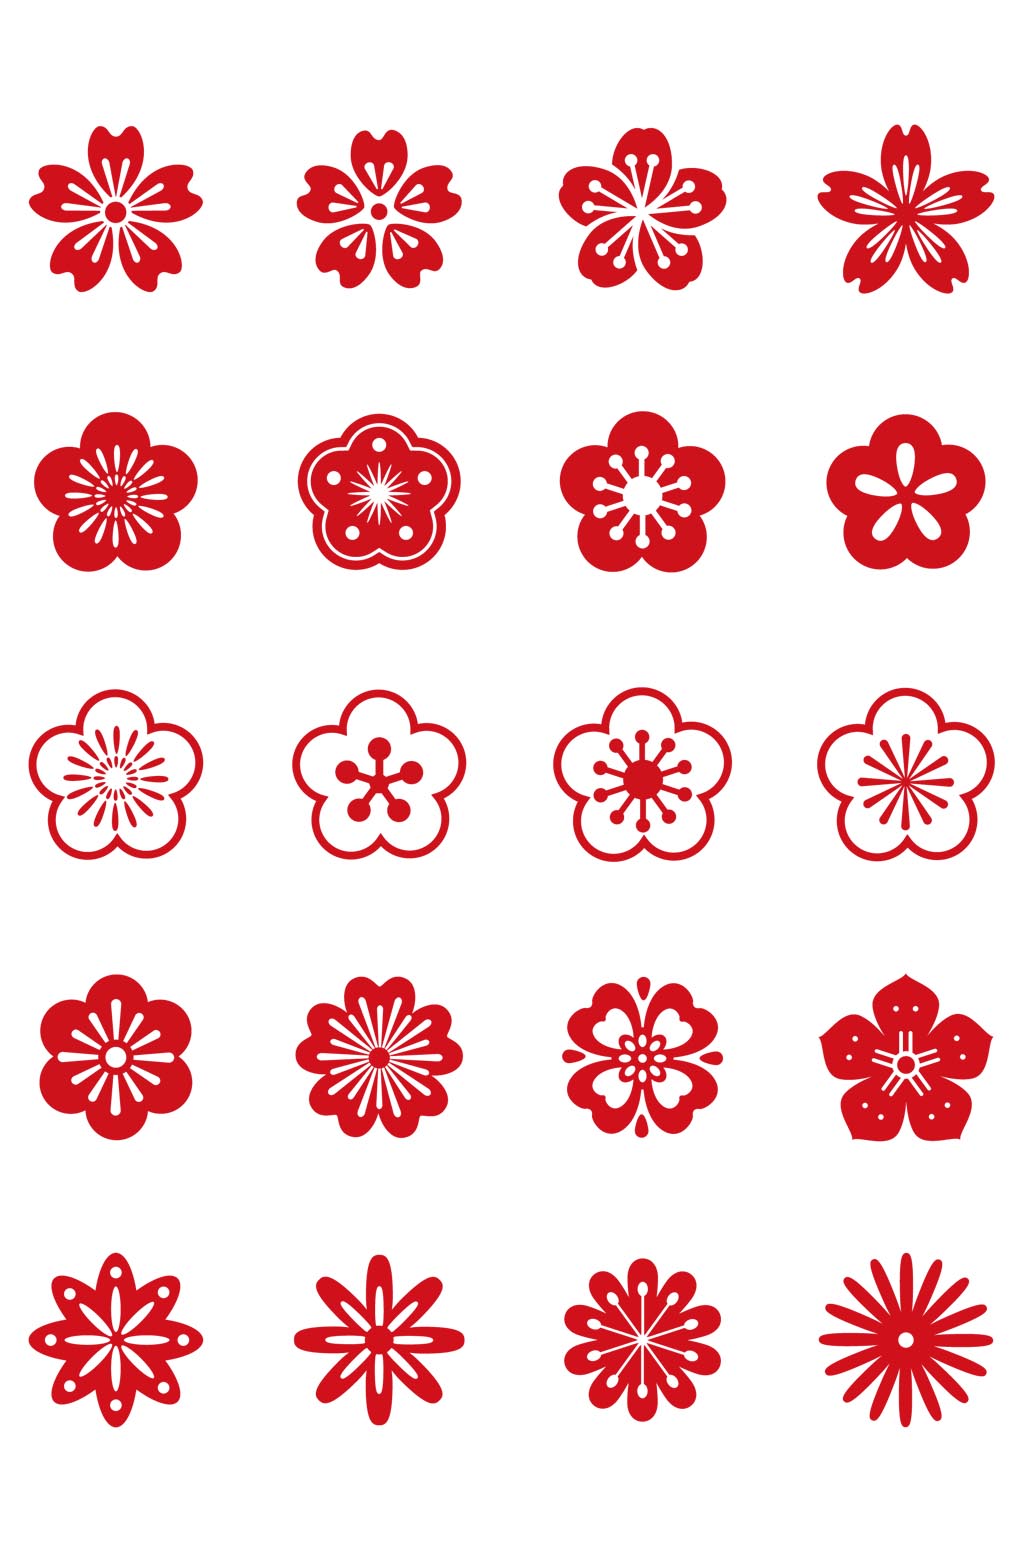 五瓣梅花符号图片